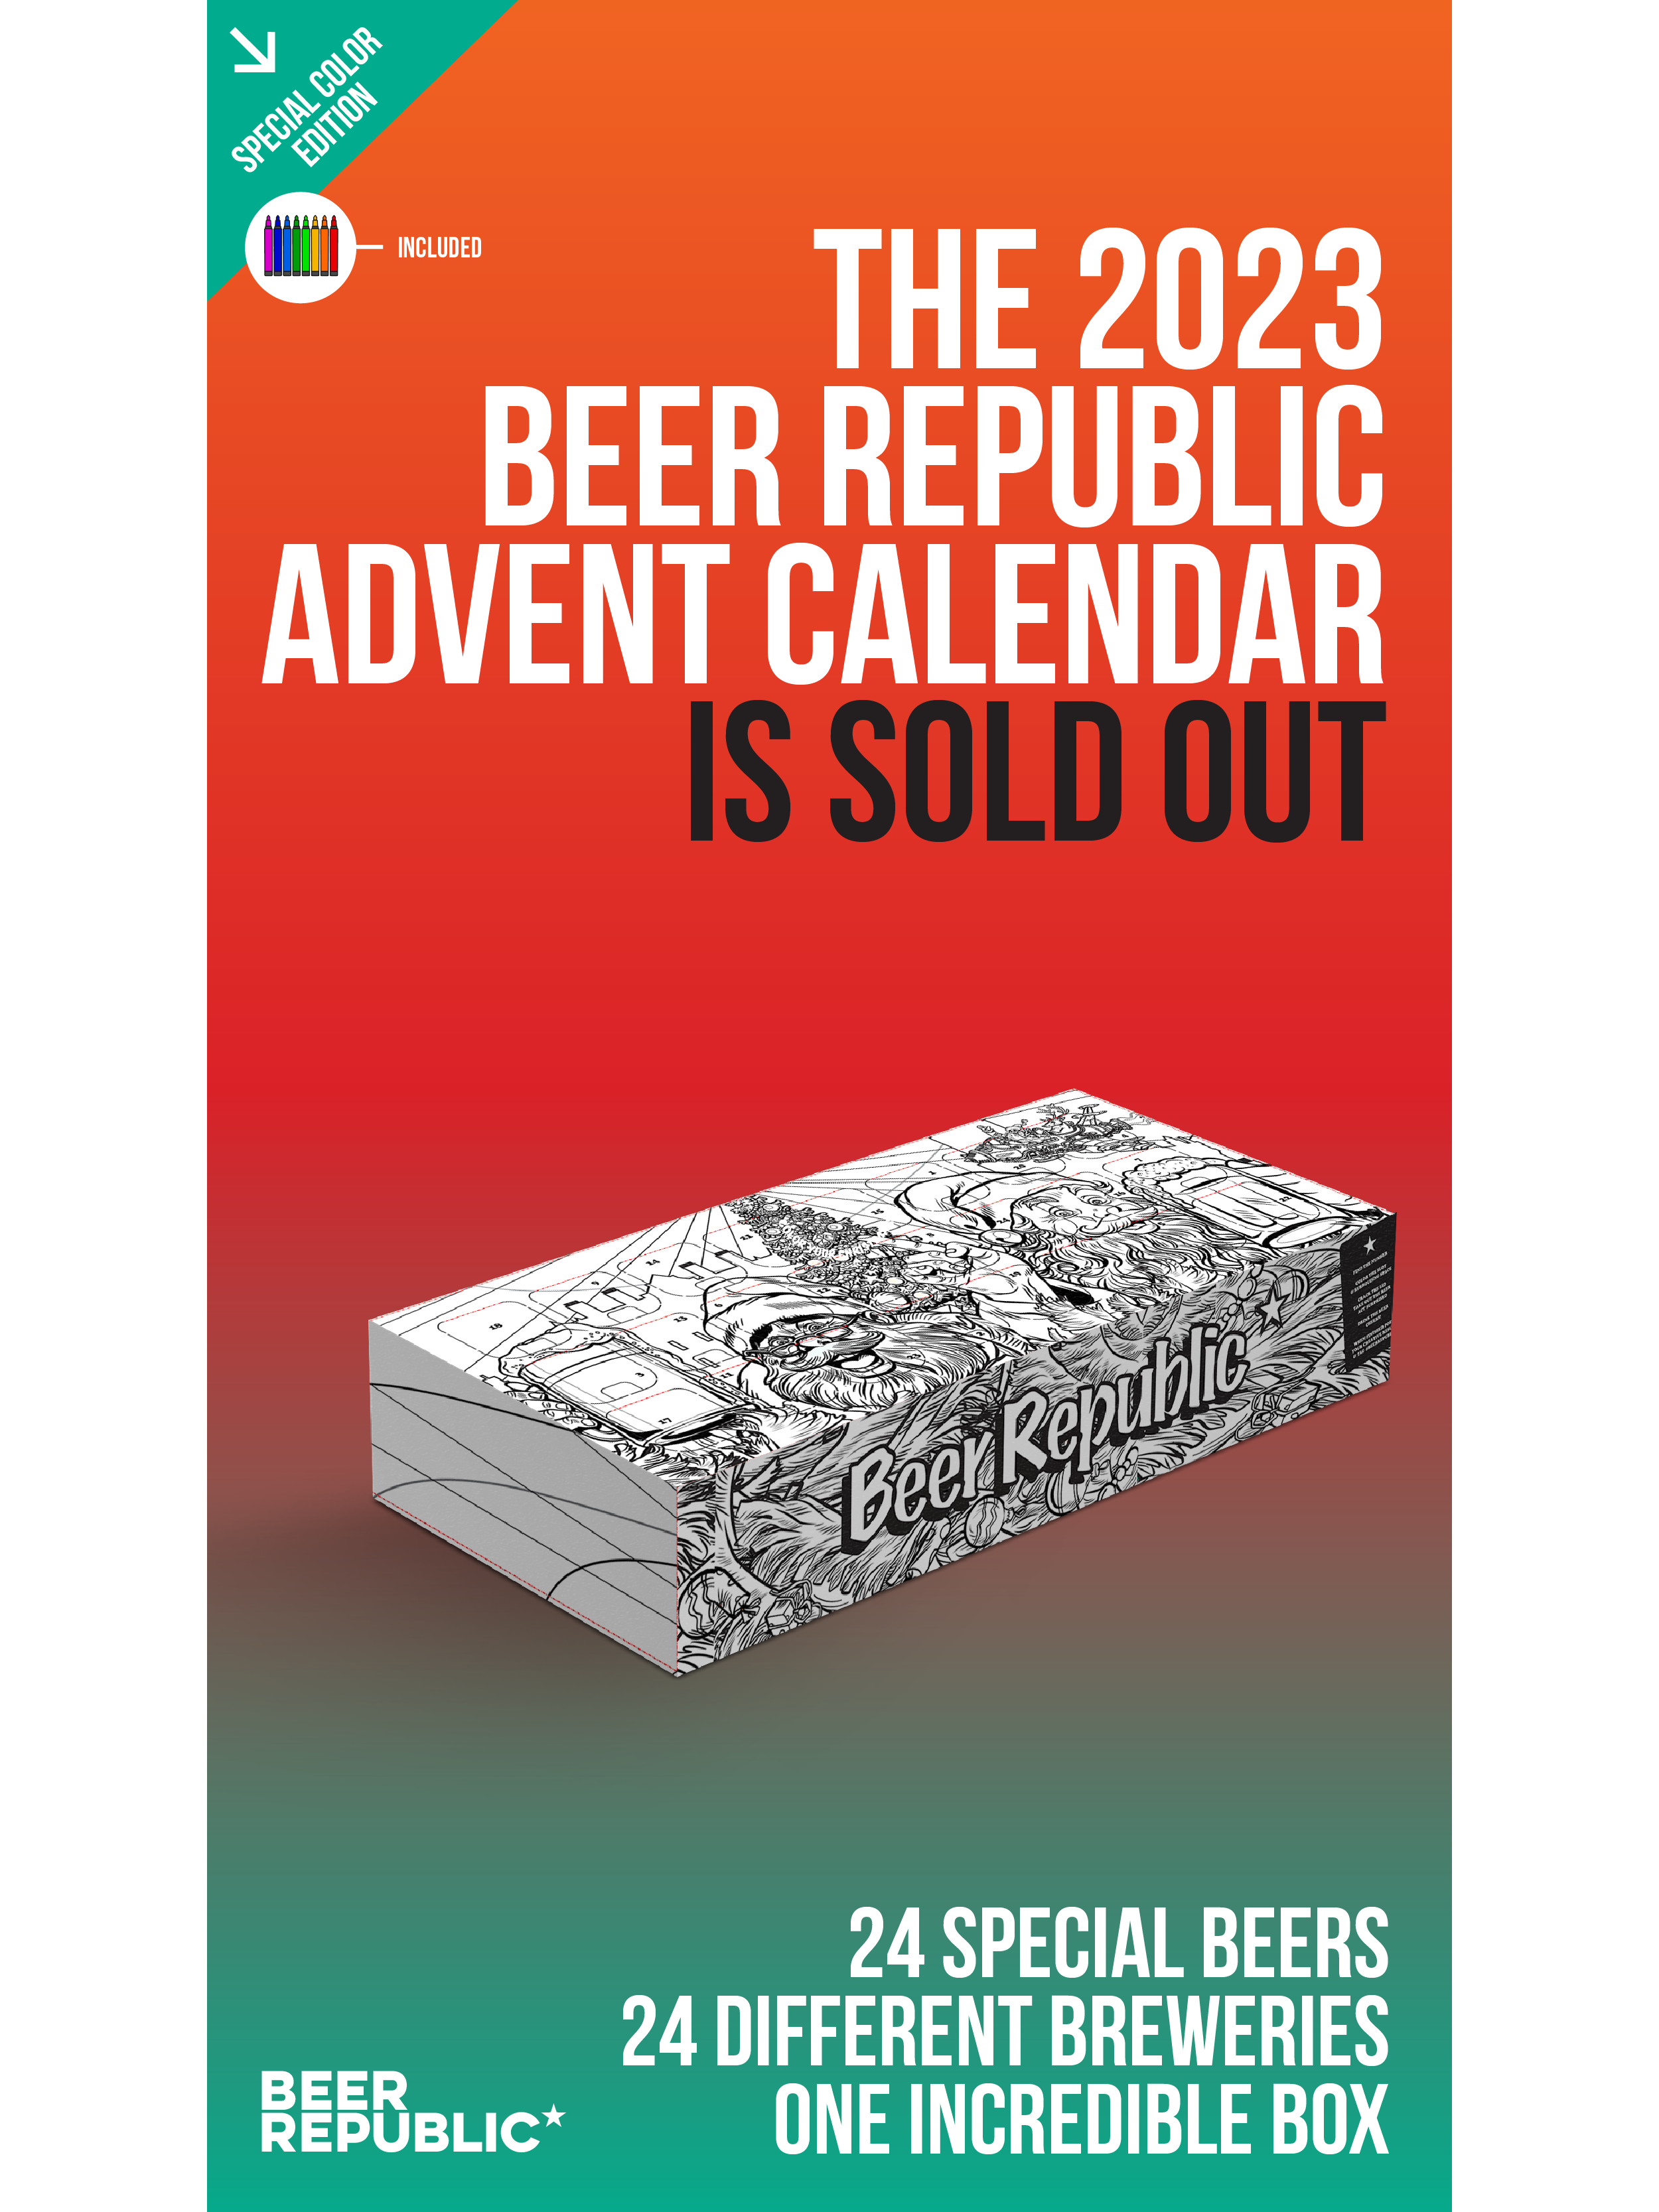 Le Beer Republic Calendrier de l'Avent 2023